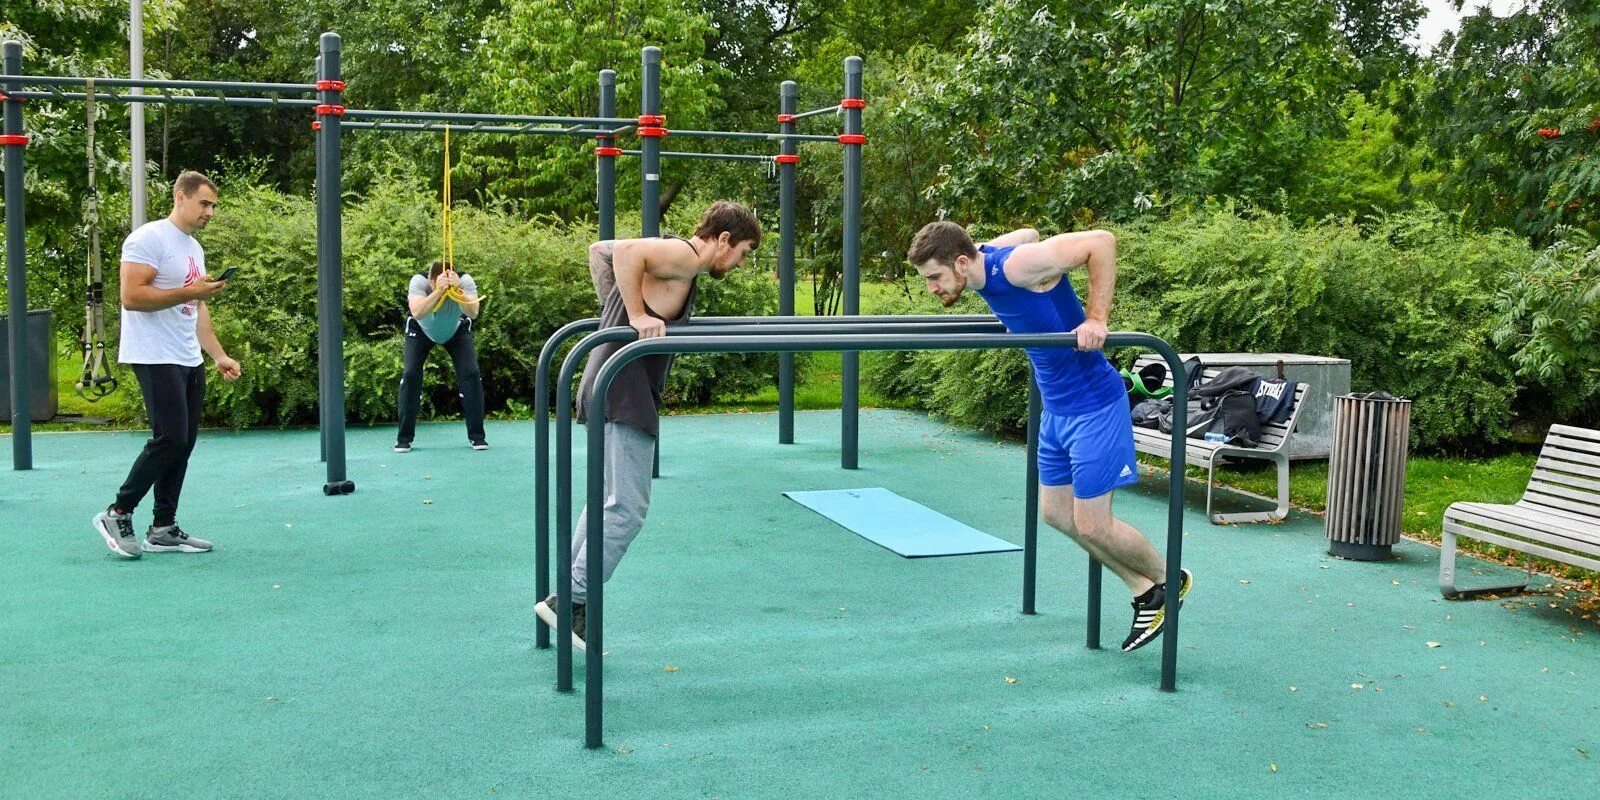 Спортплощадки в парках Москвы. Спорт площадка в парке. Тренировка в парке. Площадки для занятий спортом в парках Москвы.